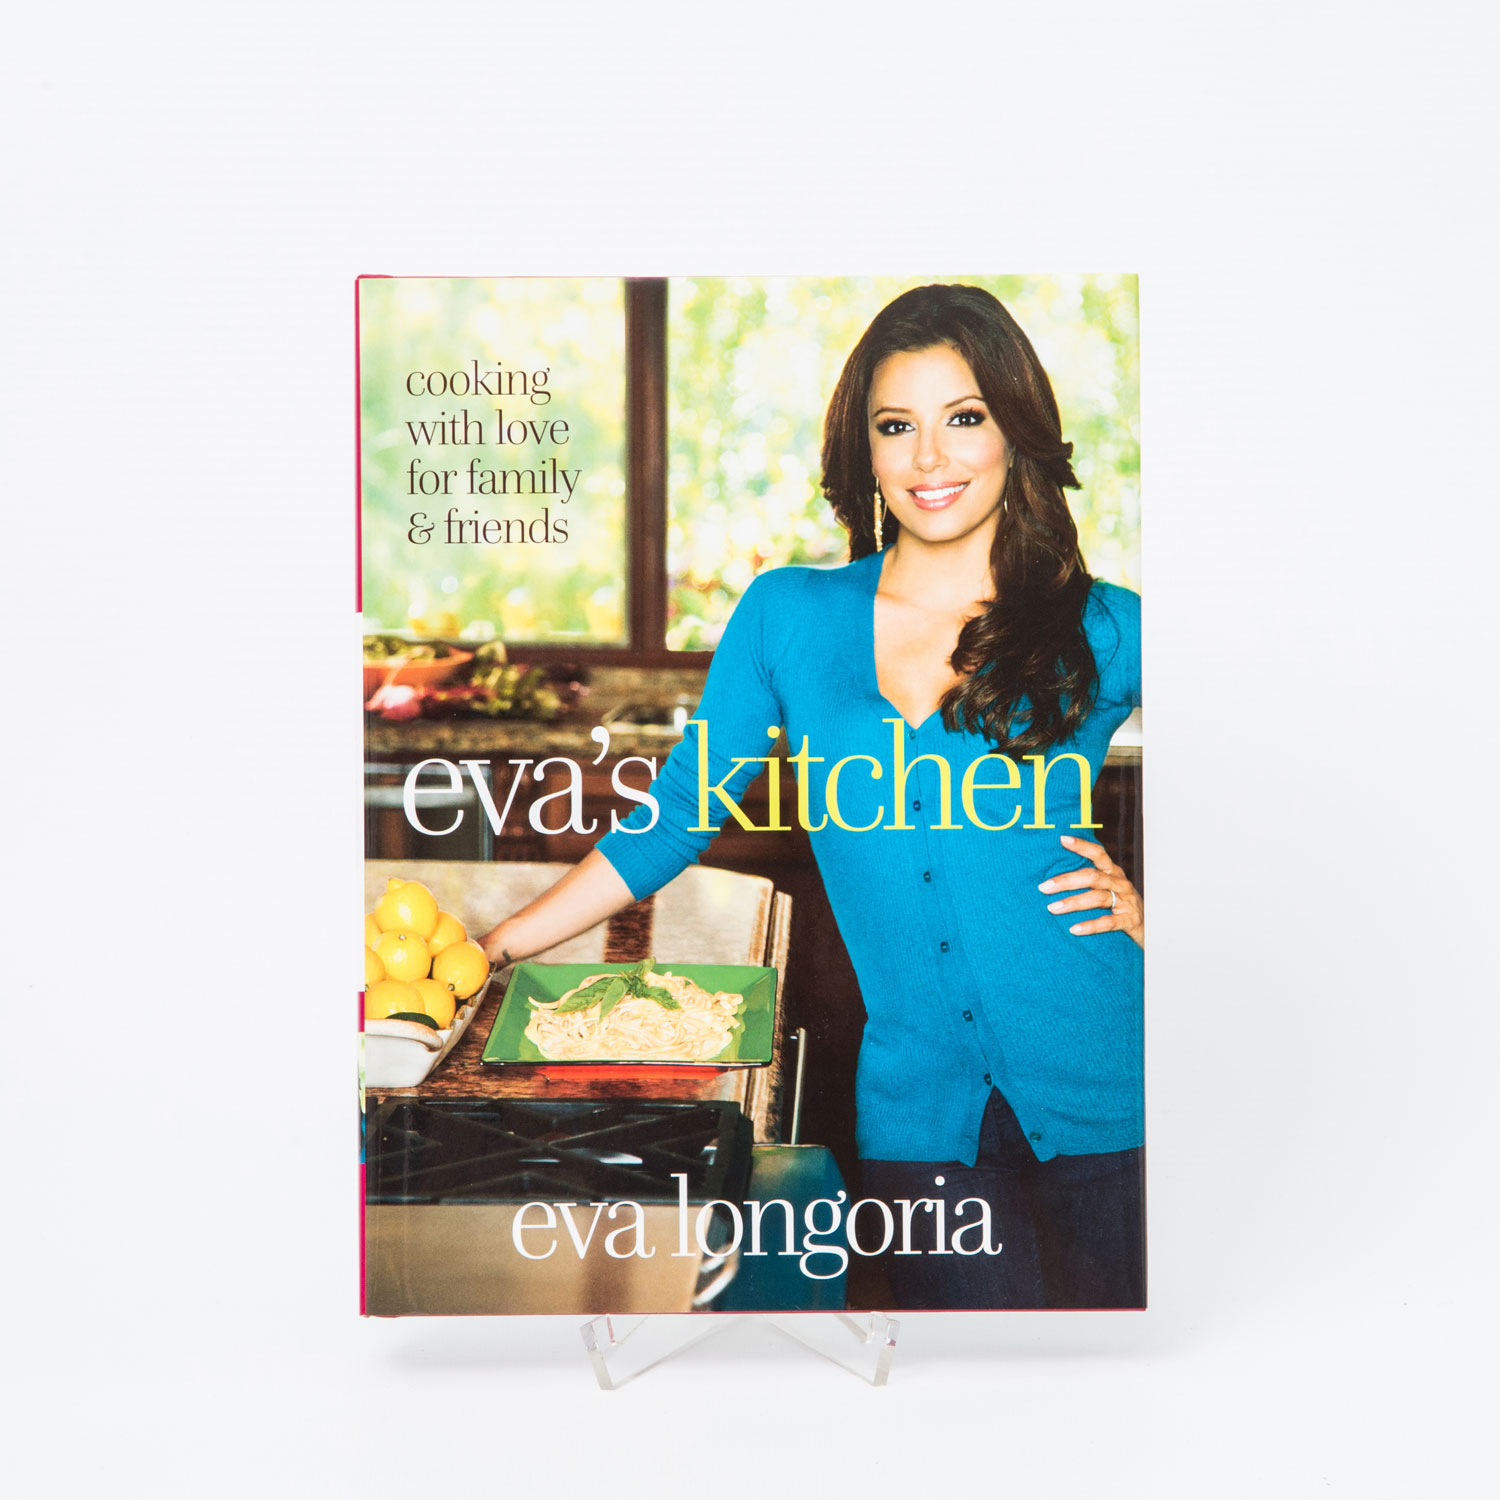 Autographen - Eva Longoria. Sign. Kochbuch "Eva's Kitchen" der US-amerikanischen Schauspielerin